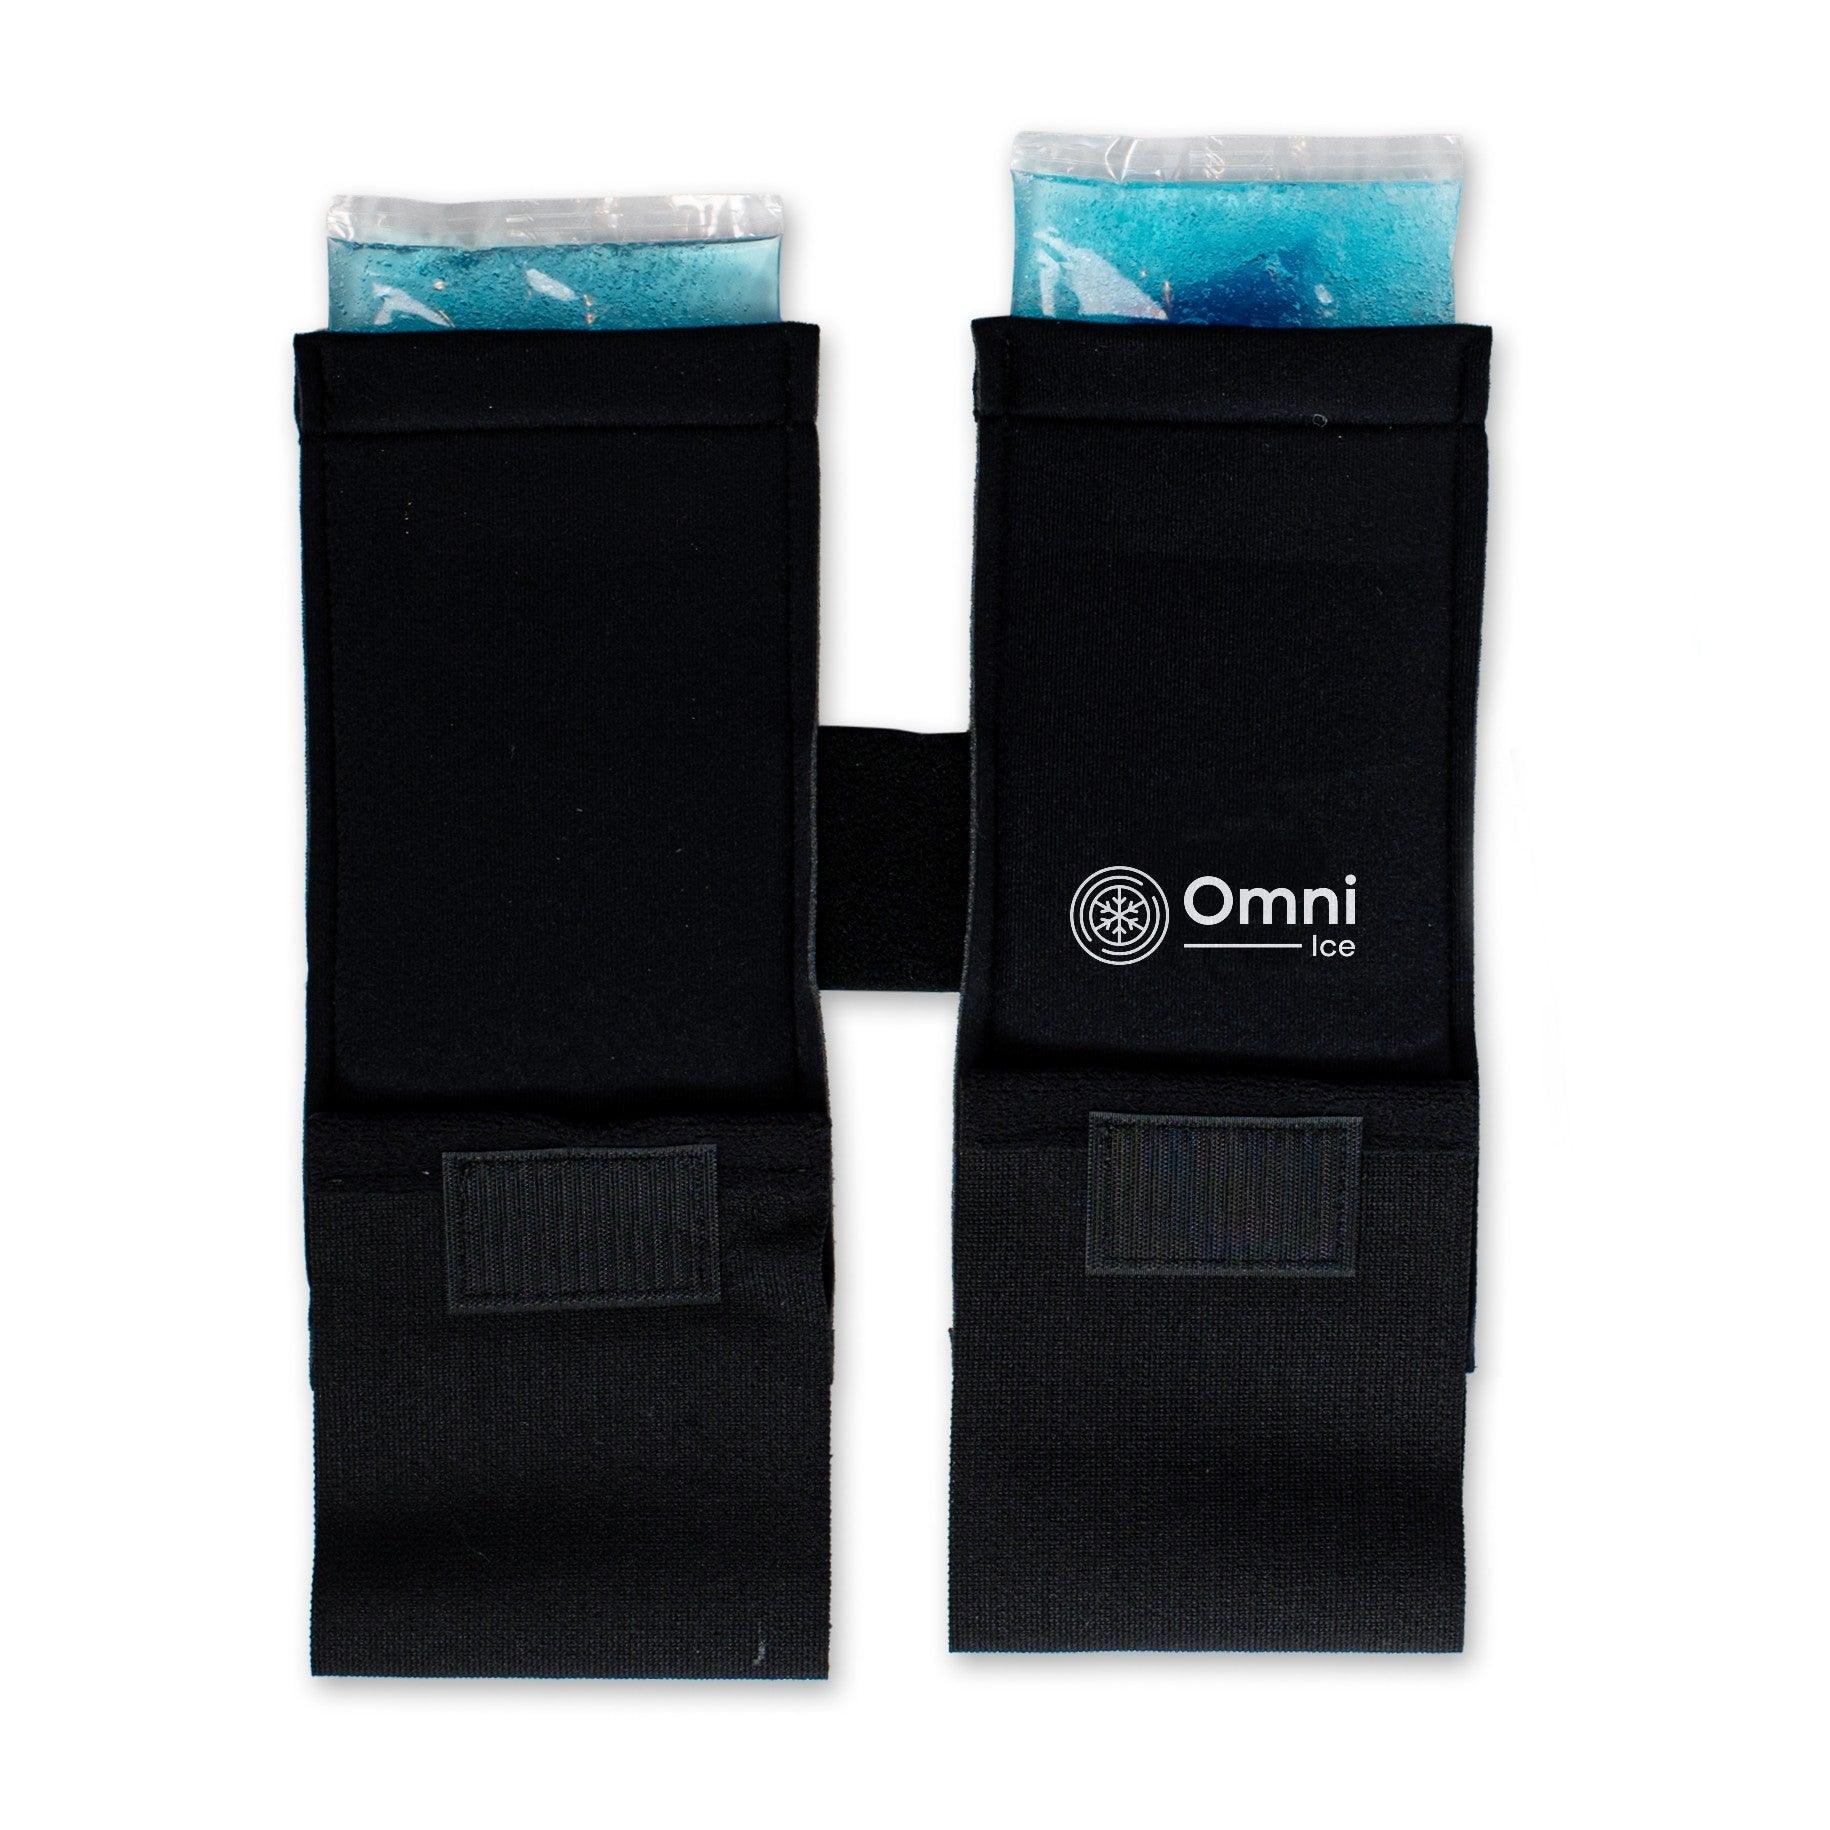 Omni Ice Premium Cold Therapy Compression Straps